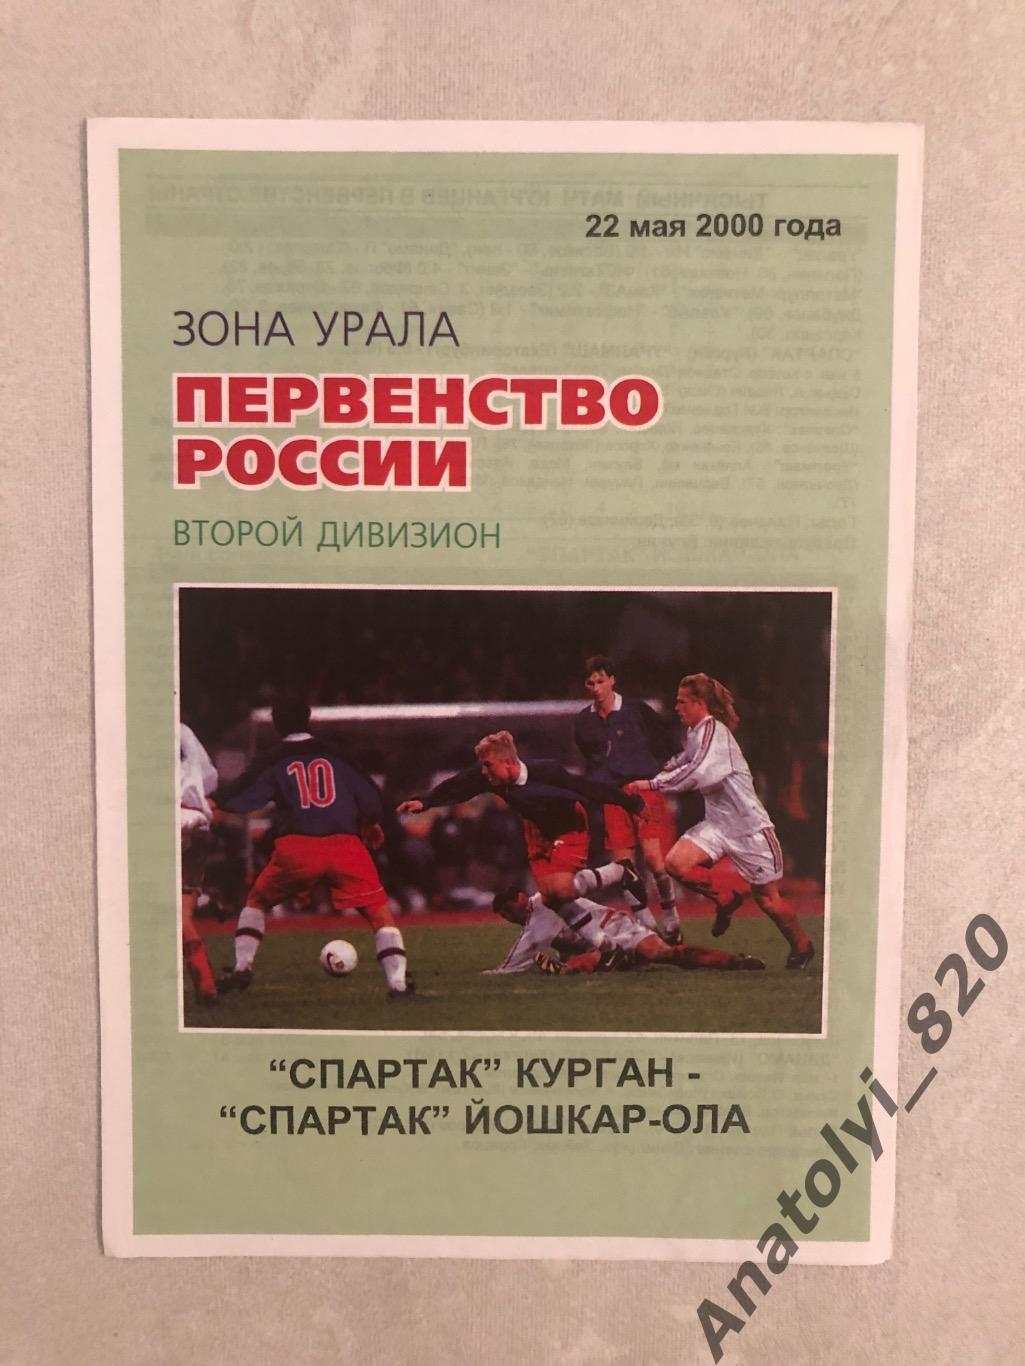 Спартак Курган - Спартак Йошкар-Ола, 22.05.2000